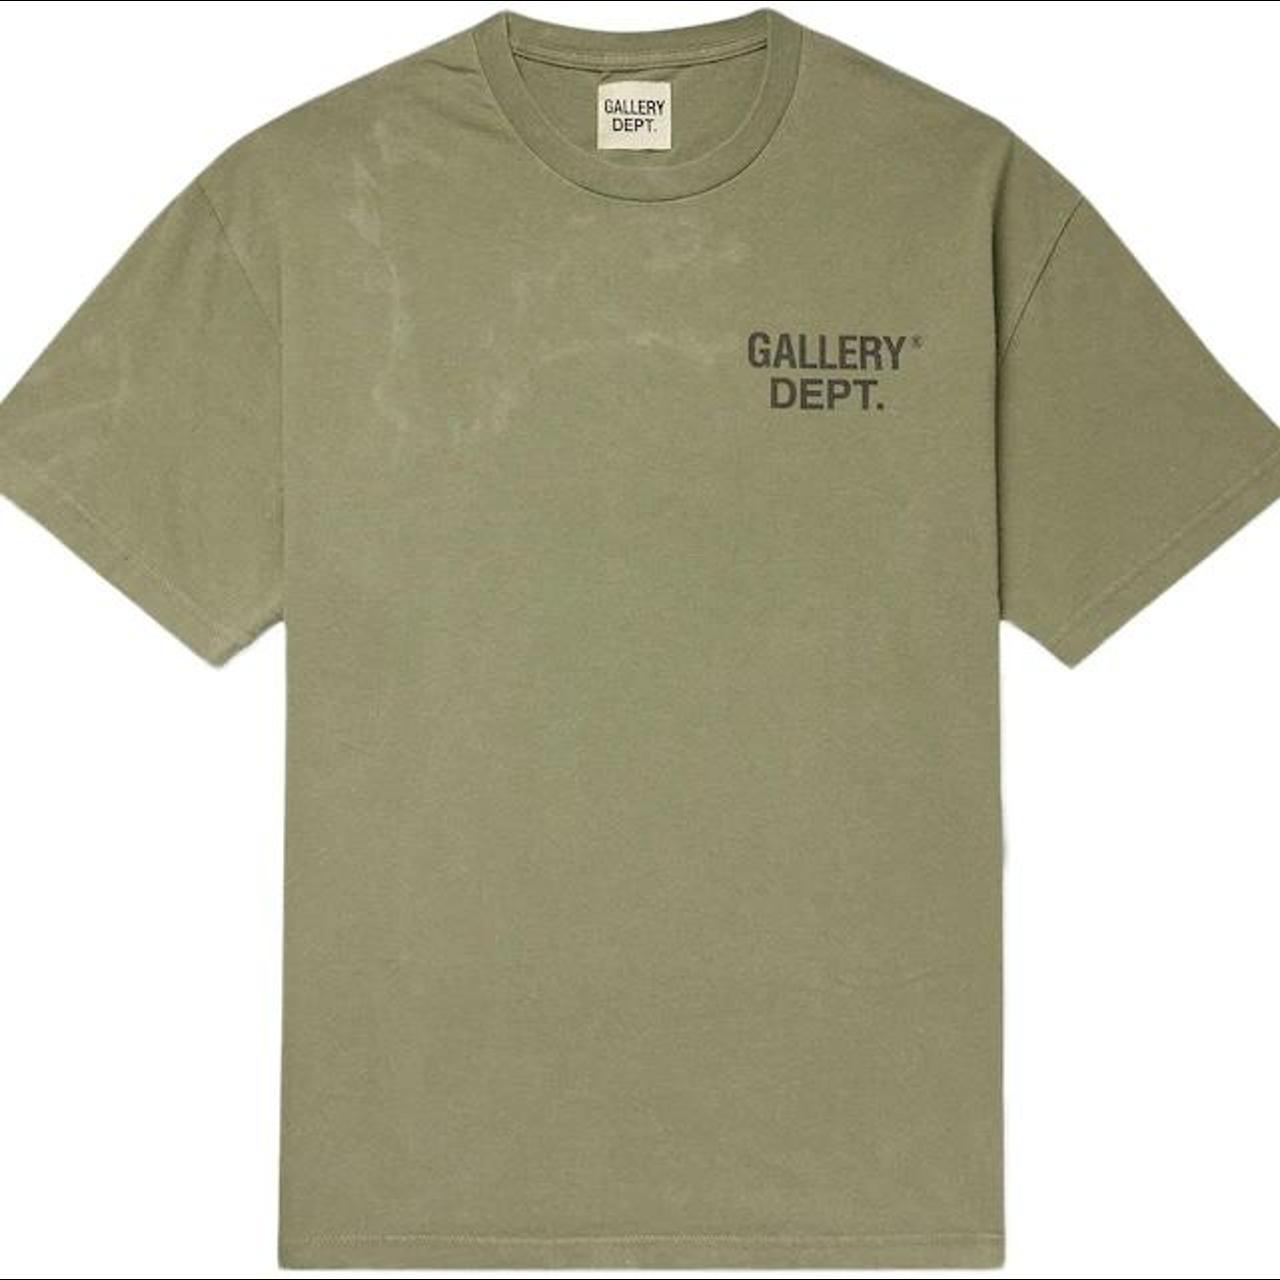 Gallery Dept. Men's Khaki and Green T-shirt | Depop